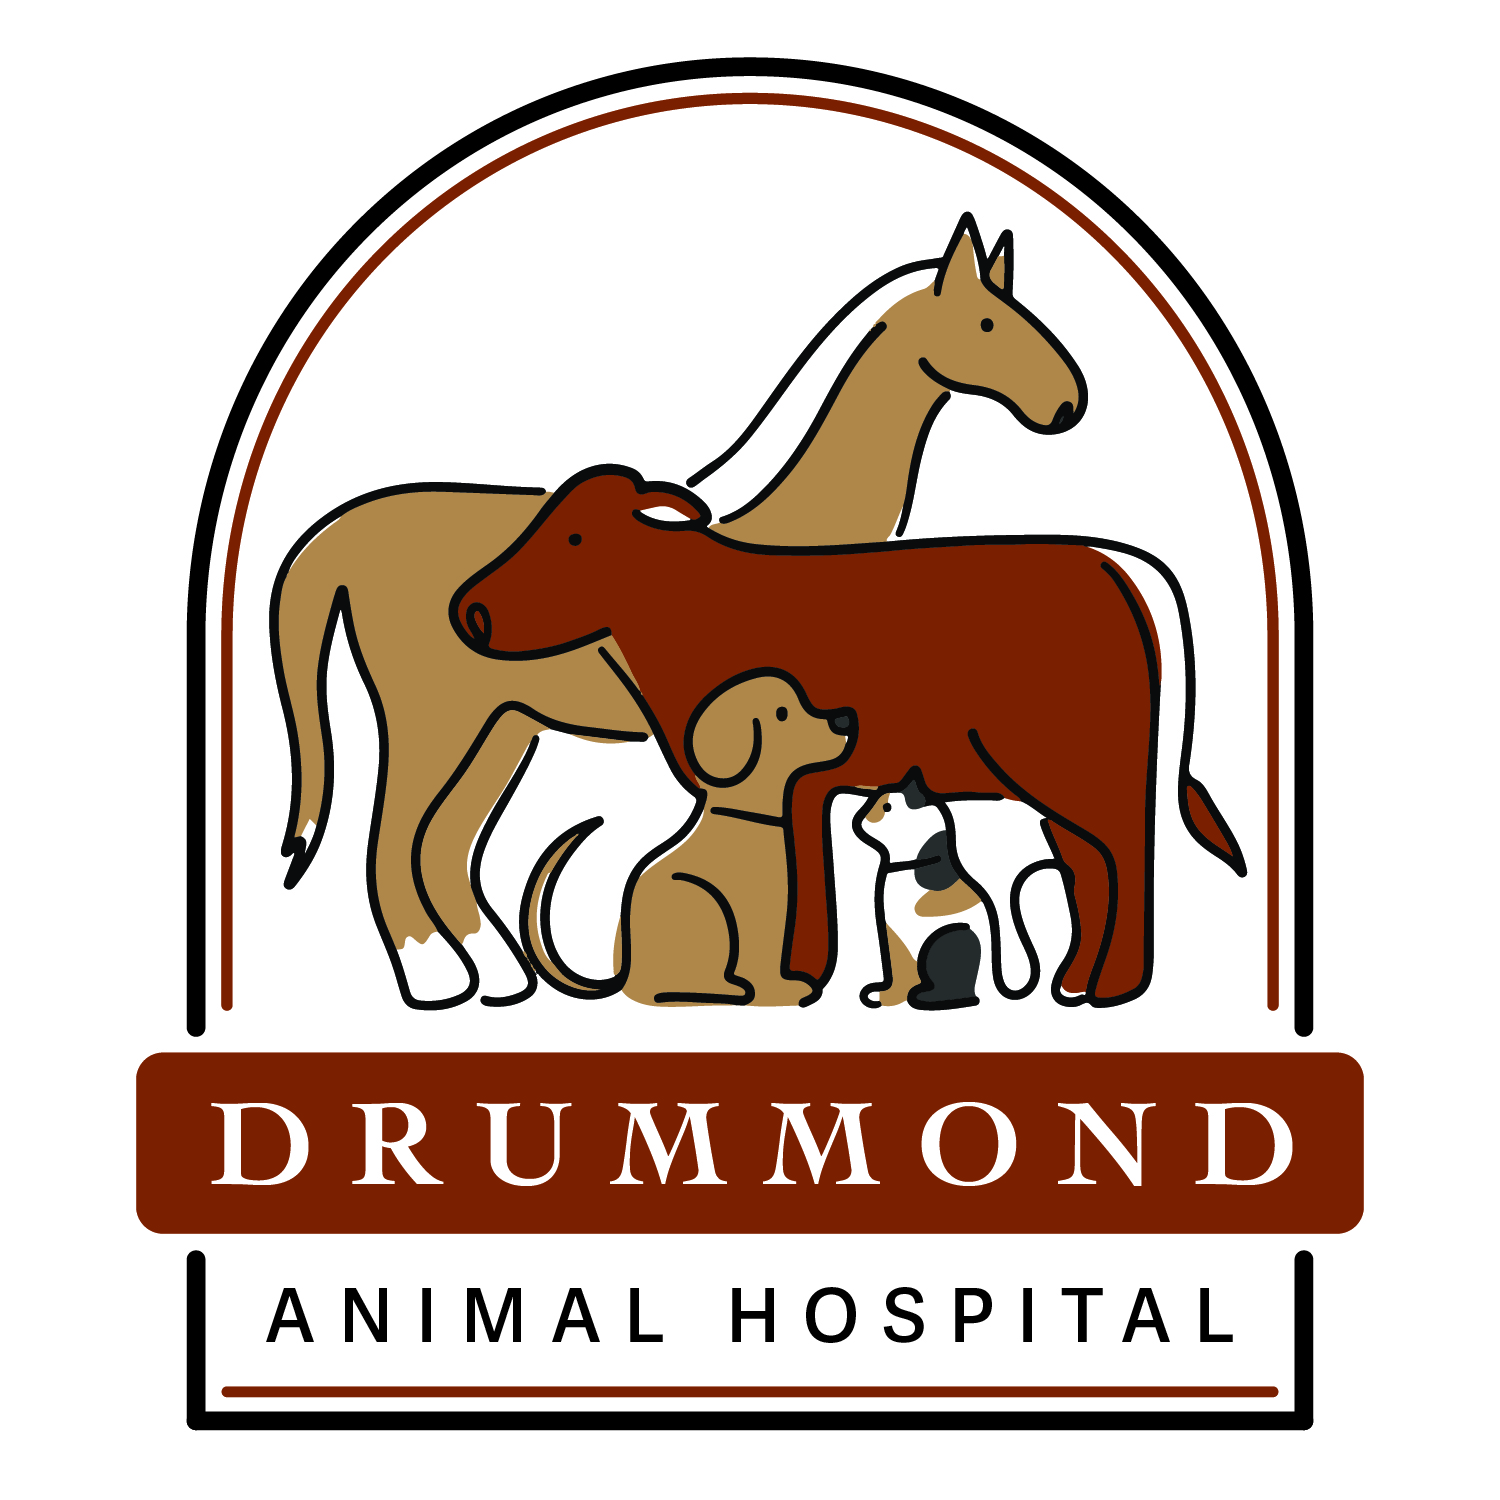 Drummond Animal Hospital